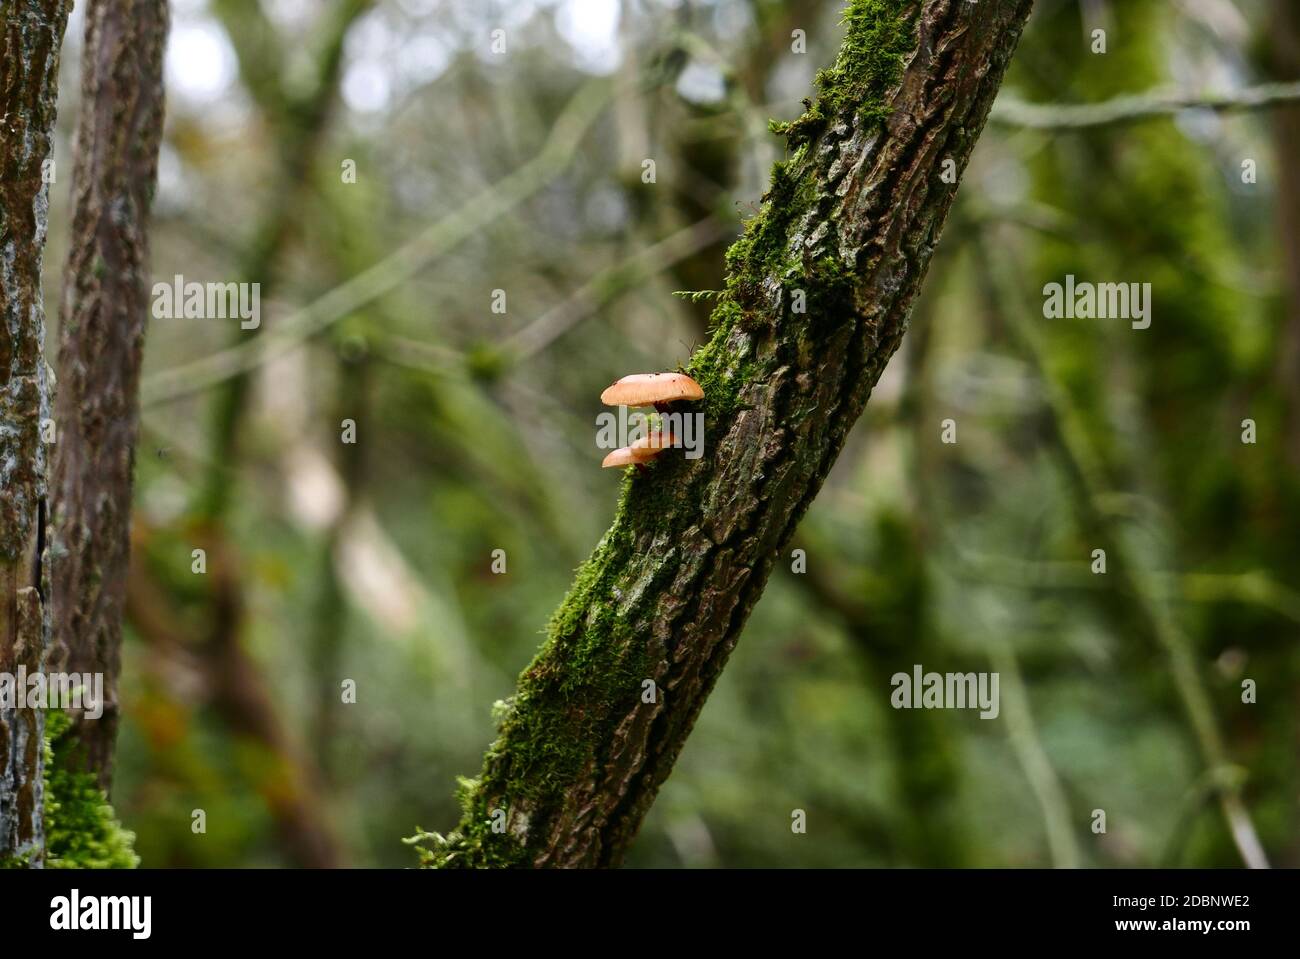 Zwei Pilze (Lichen agaric) wachsen auf einem Moos/Flechten bedeckten Baumstamm in einem Wald in Cambridgeshire, UK. Stockfoto